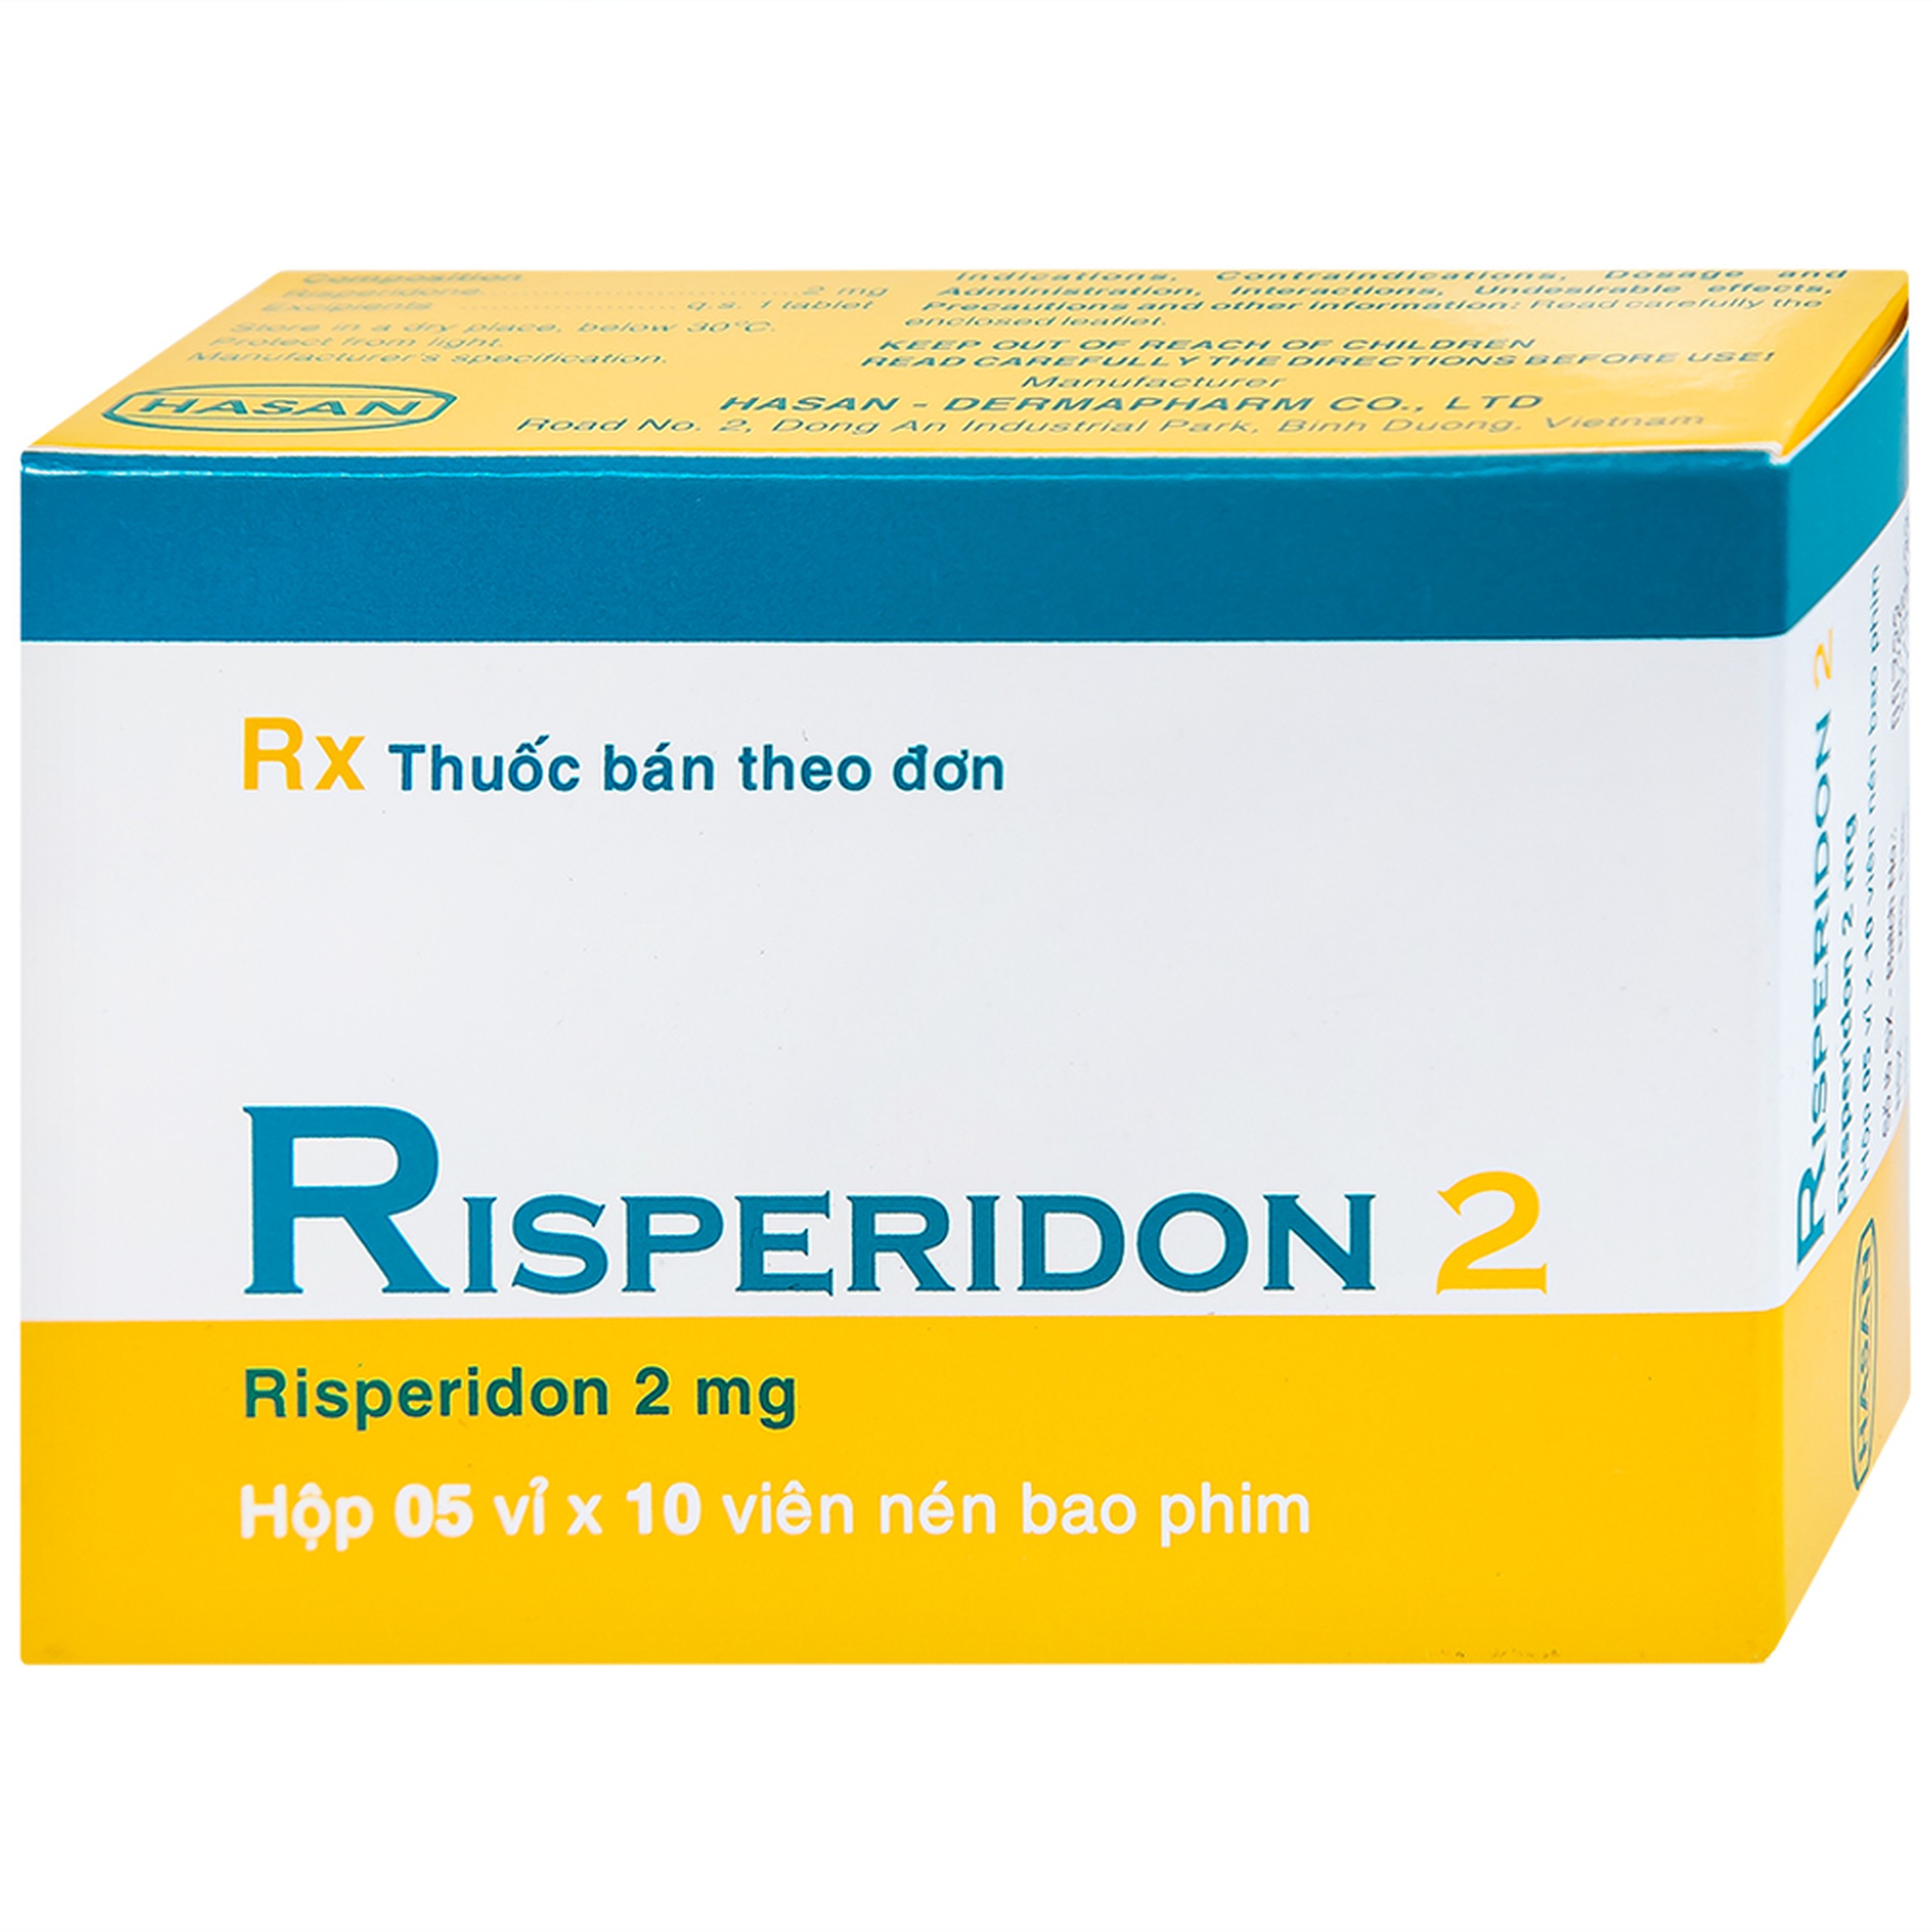 Thuốc Risperidon 2 Hasan điều trị bệnh tâm thần phân liệt (5 vỉ x 10 viên) 